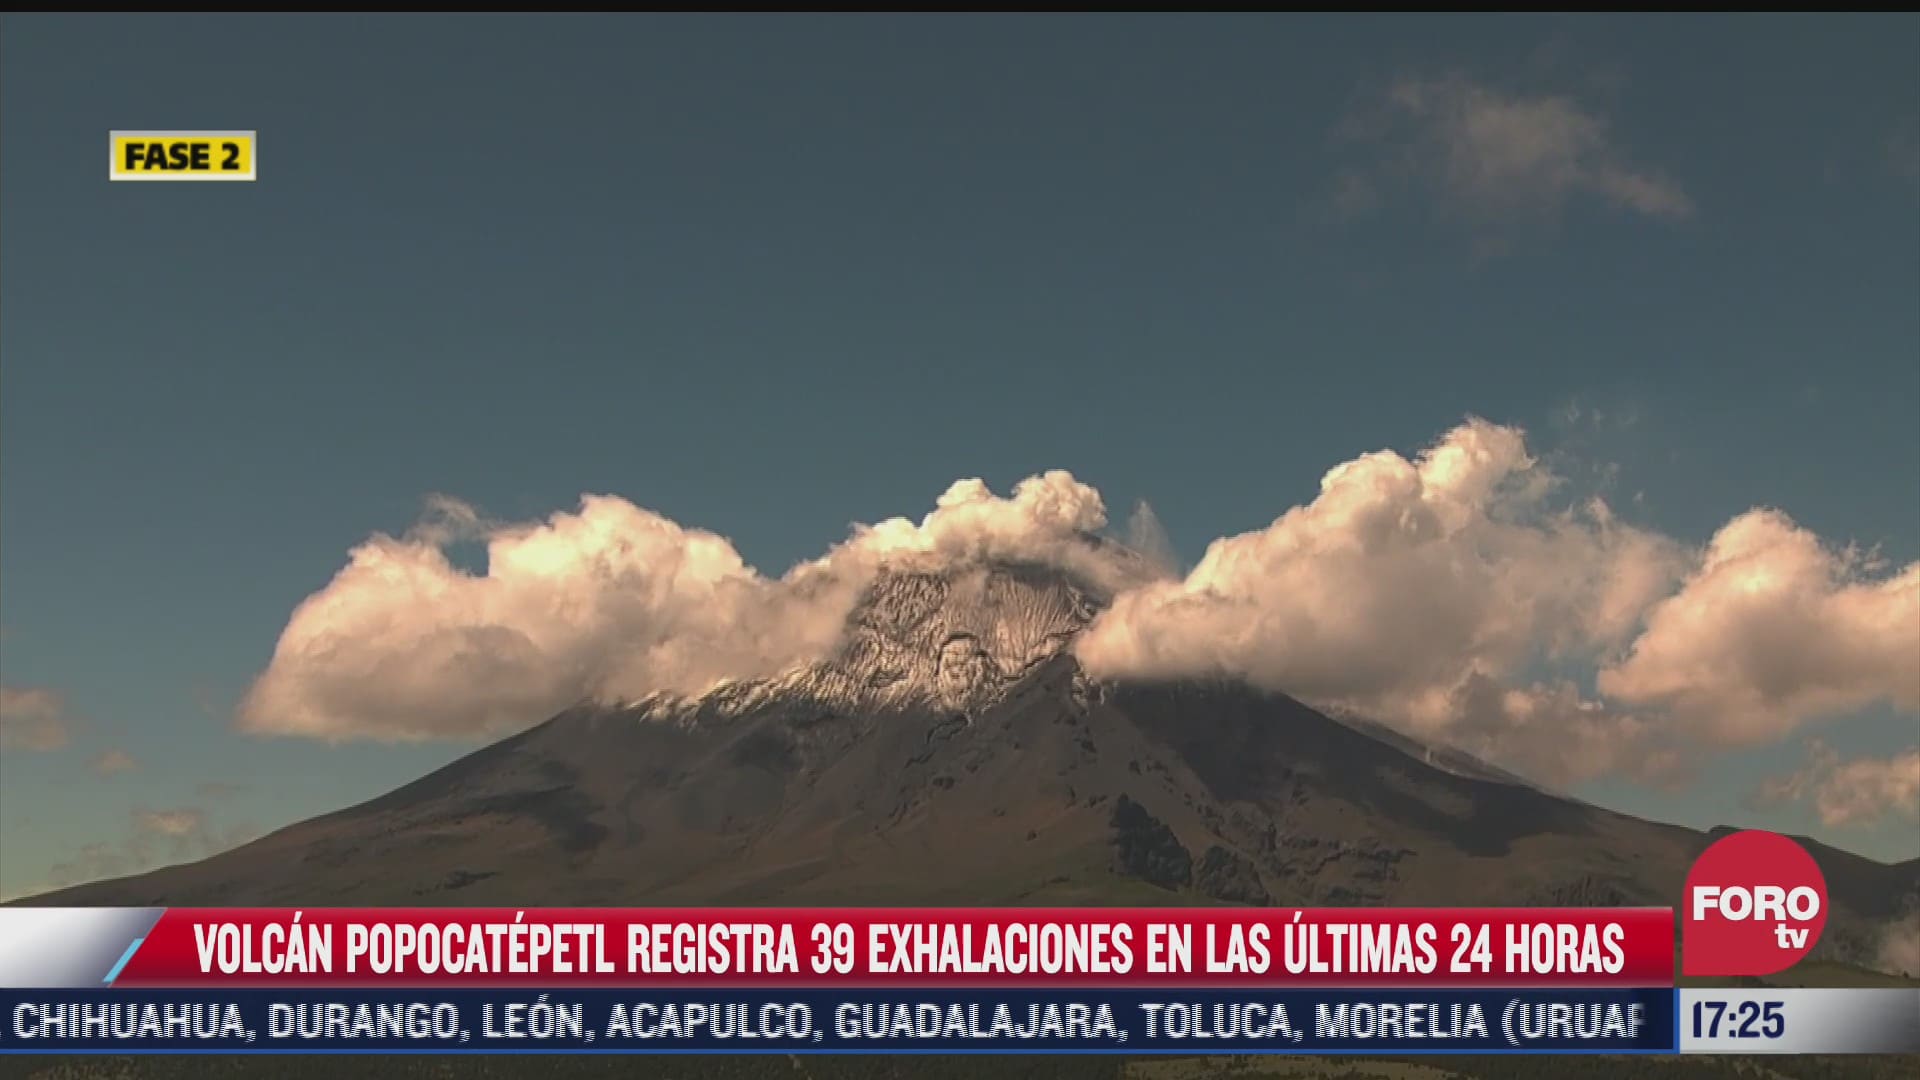 volcan popocatepetl registra 39 exhalaciones en las ultimas 24 horas